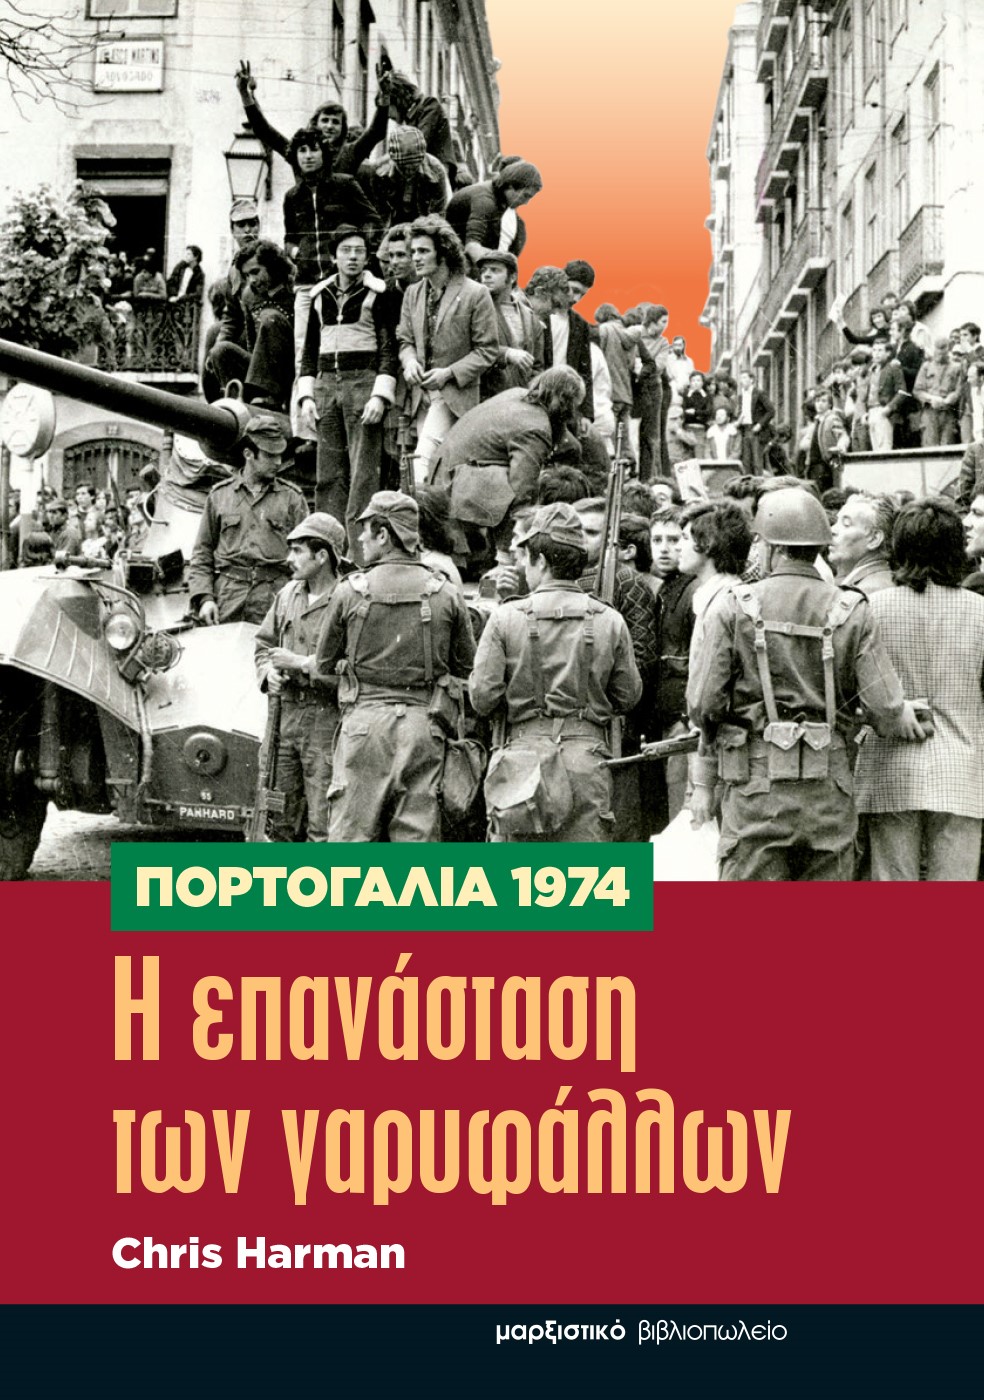 Πορτογαλία 1974. Η επανάσταση των γαρυφάλλων